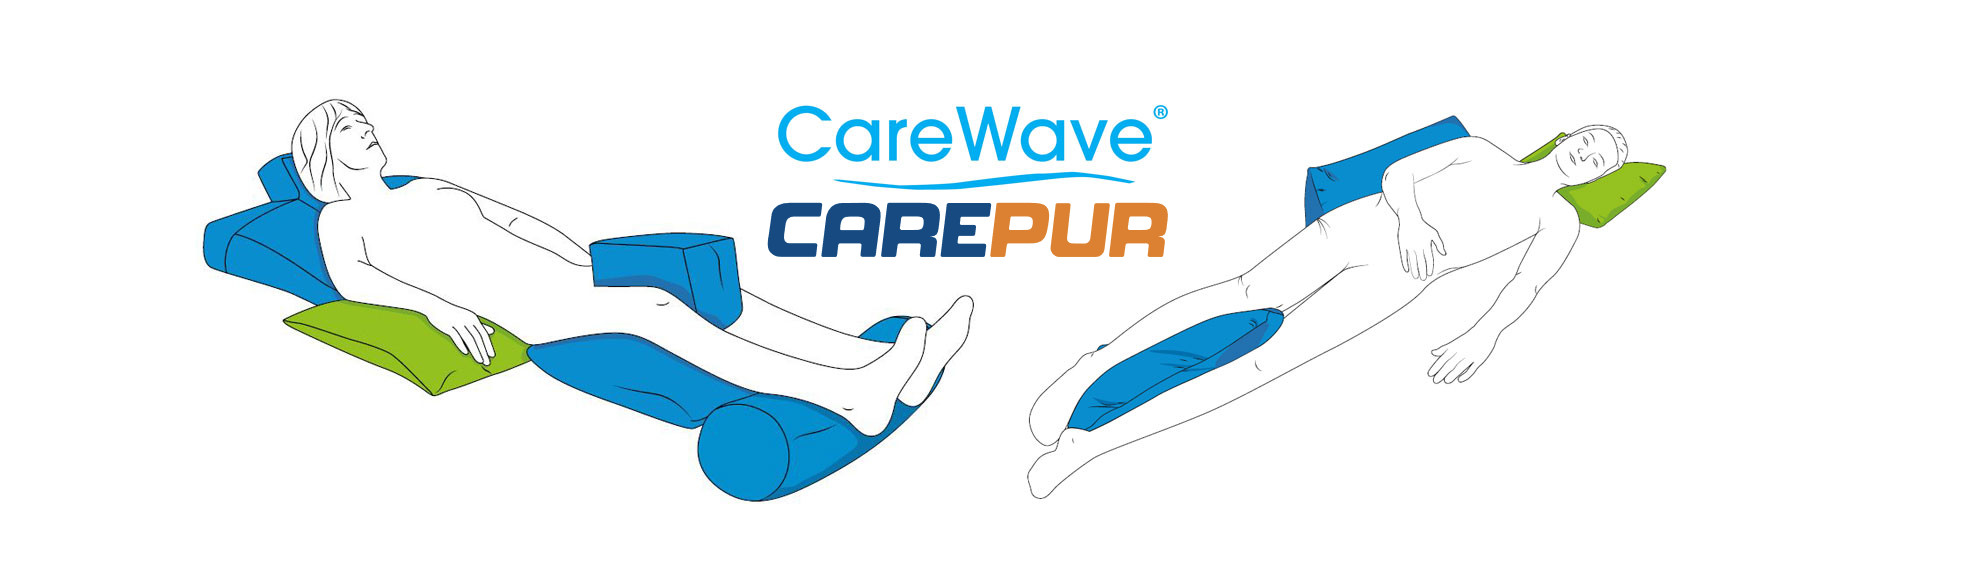 Lagerungskissen CareWave // CarePur